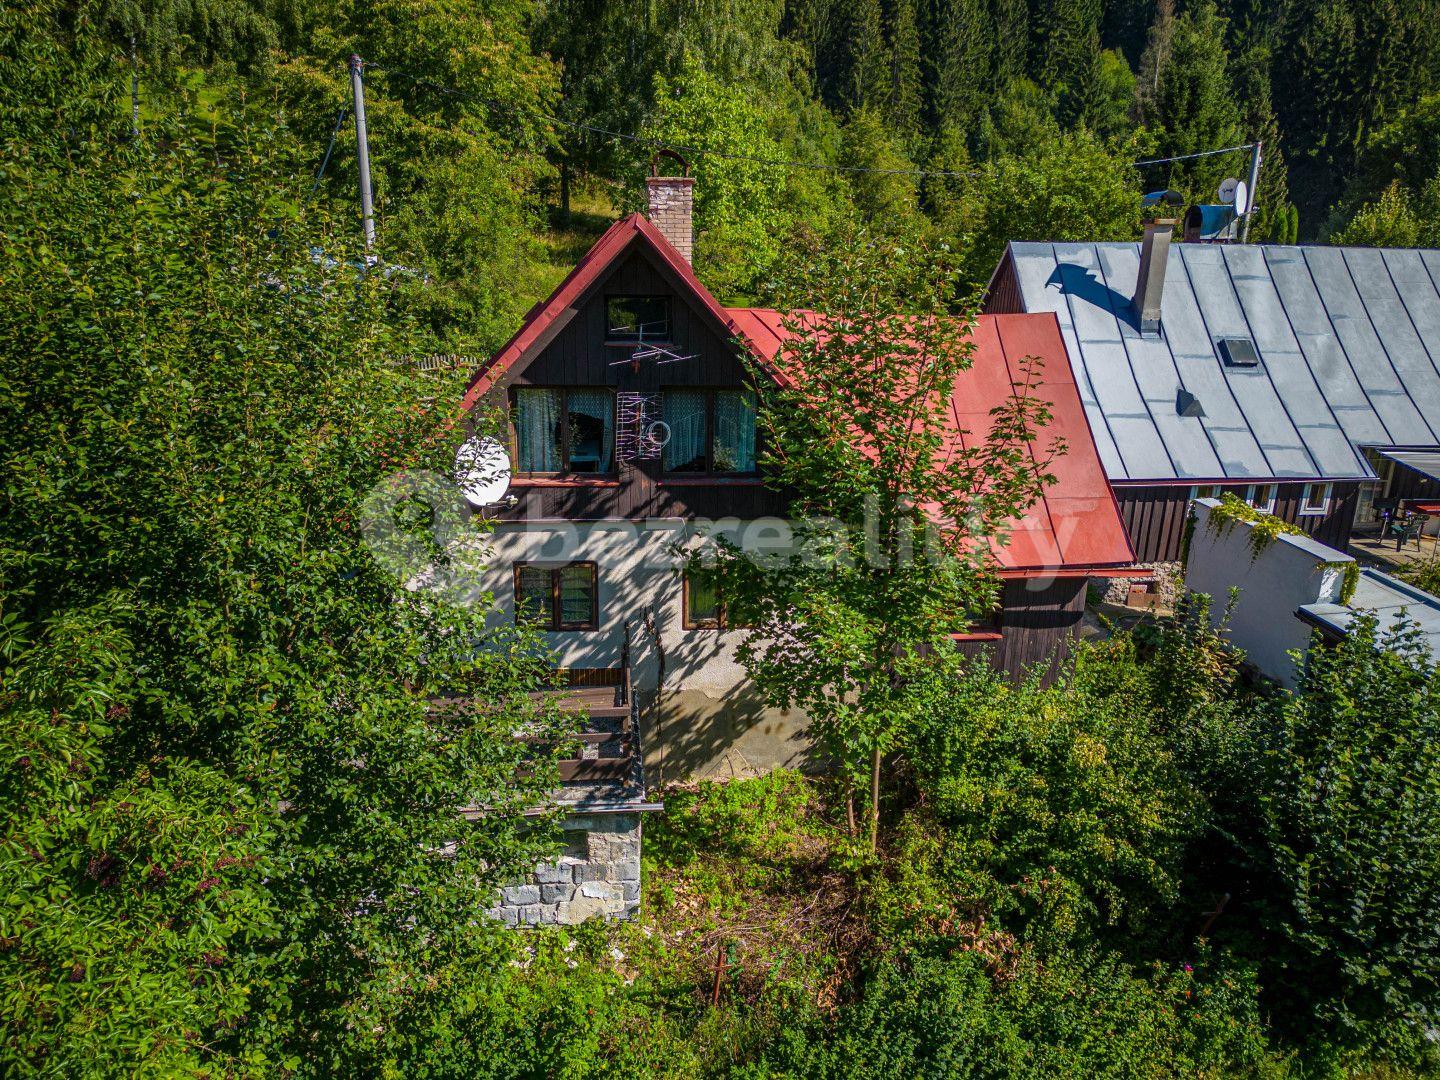 Prodej chaty, chalupy 120 m², pozemek 13.803 m², Jablonec nad Jizerou, Liberecký kraj